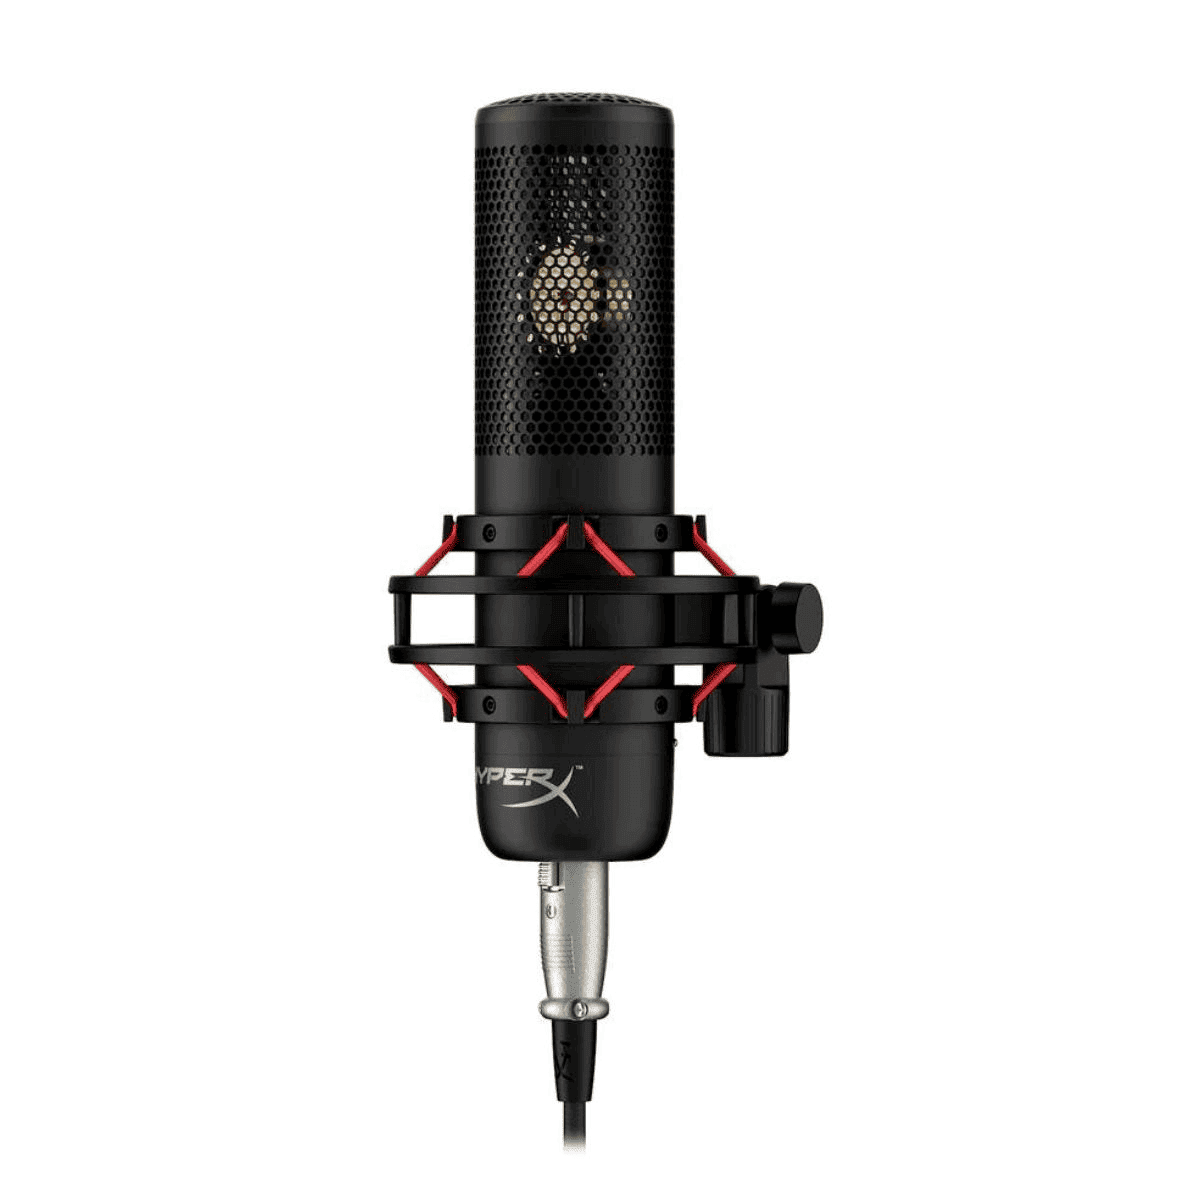 HyperX Microphone 699Z0AA Black